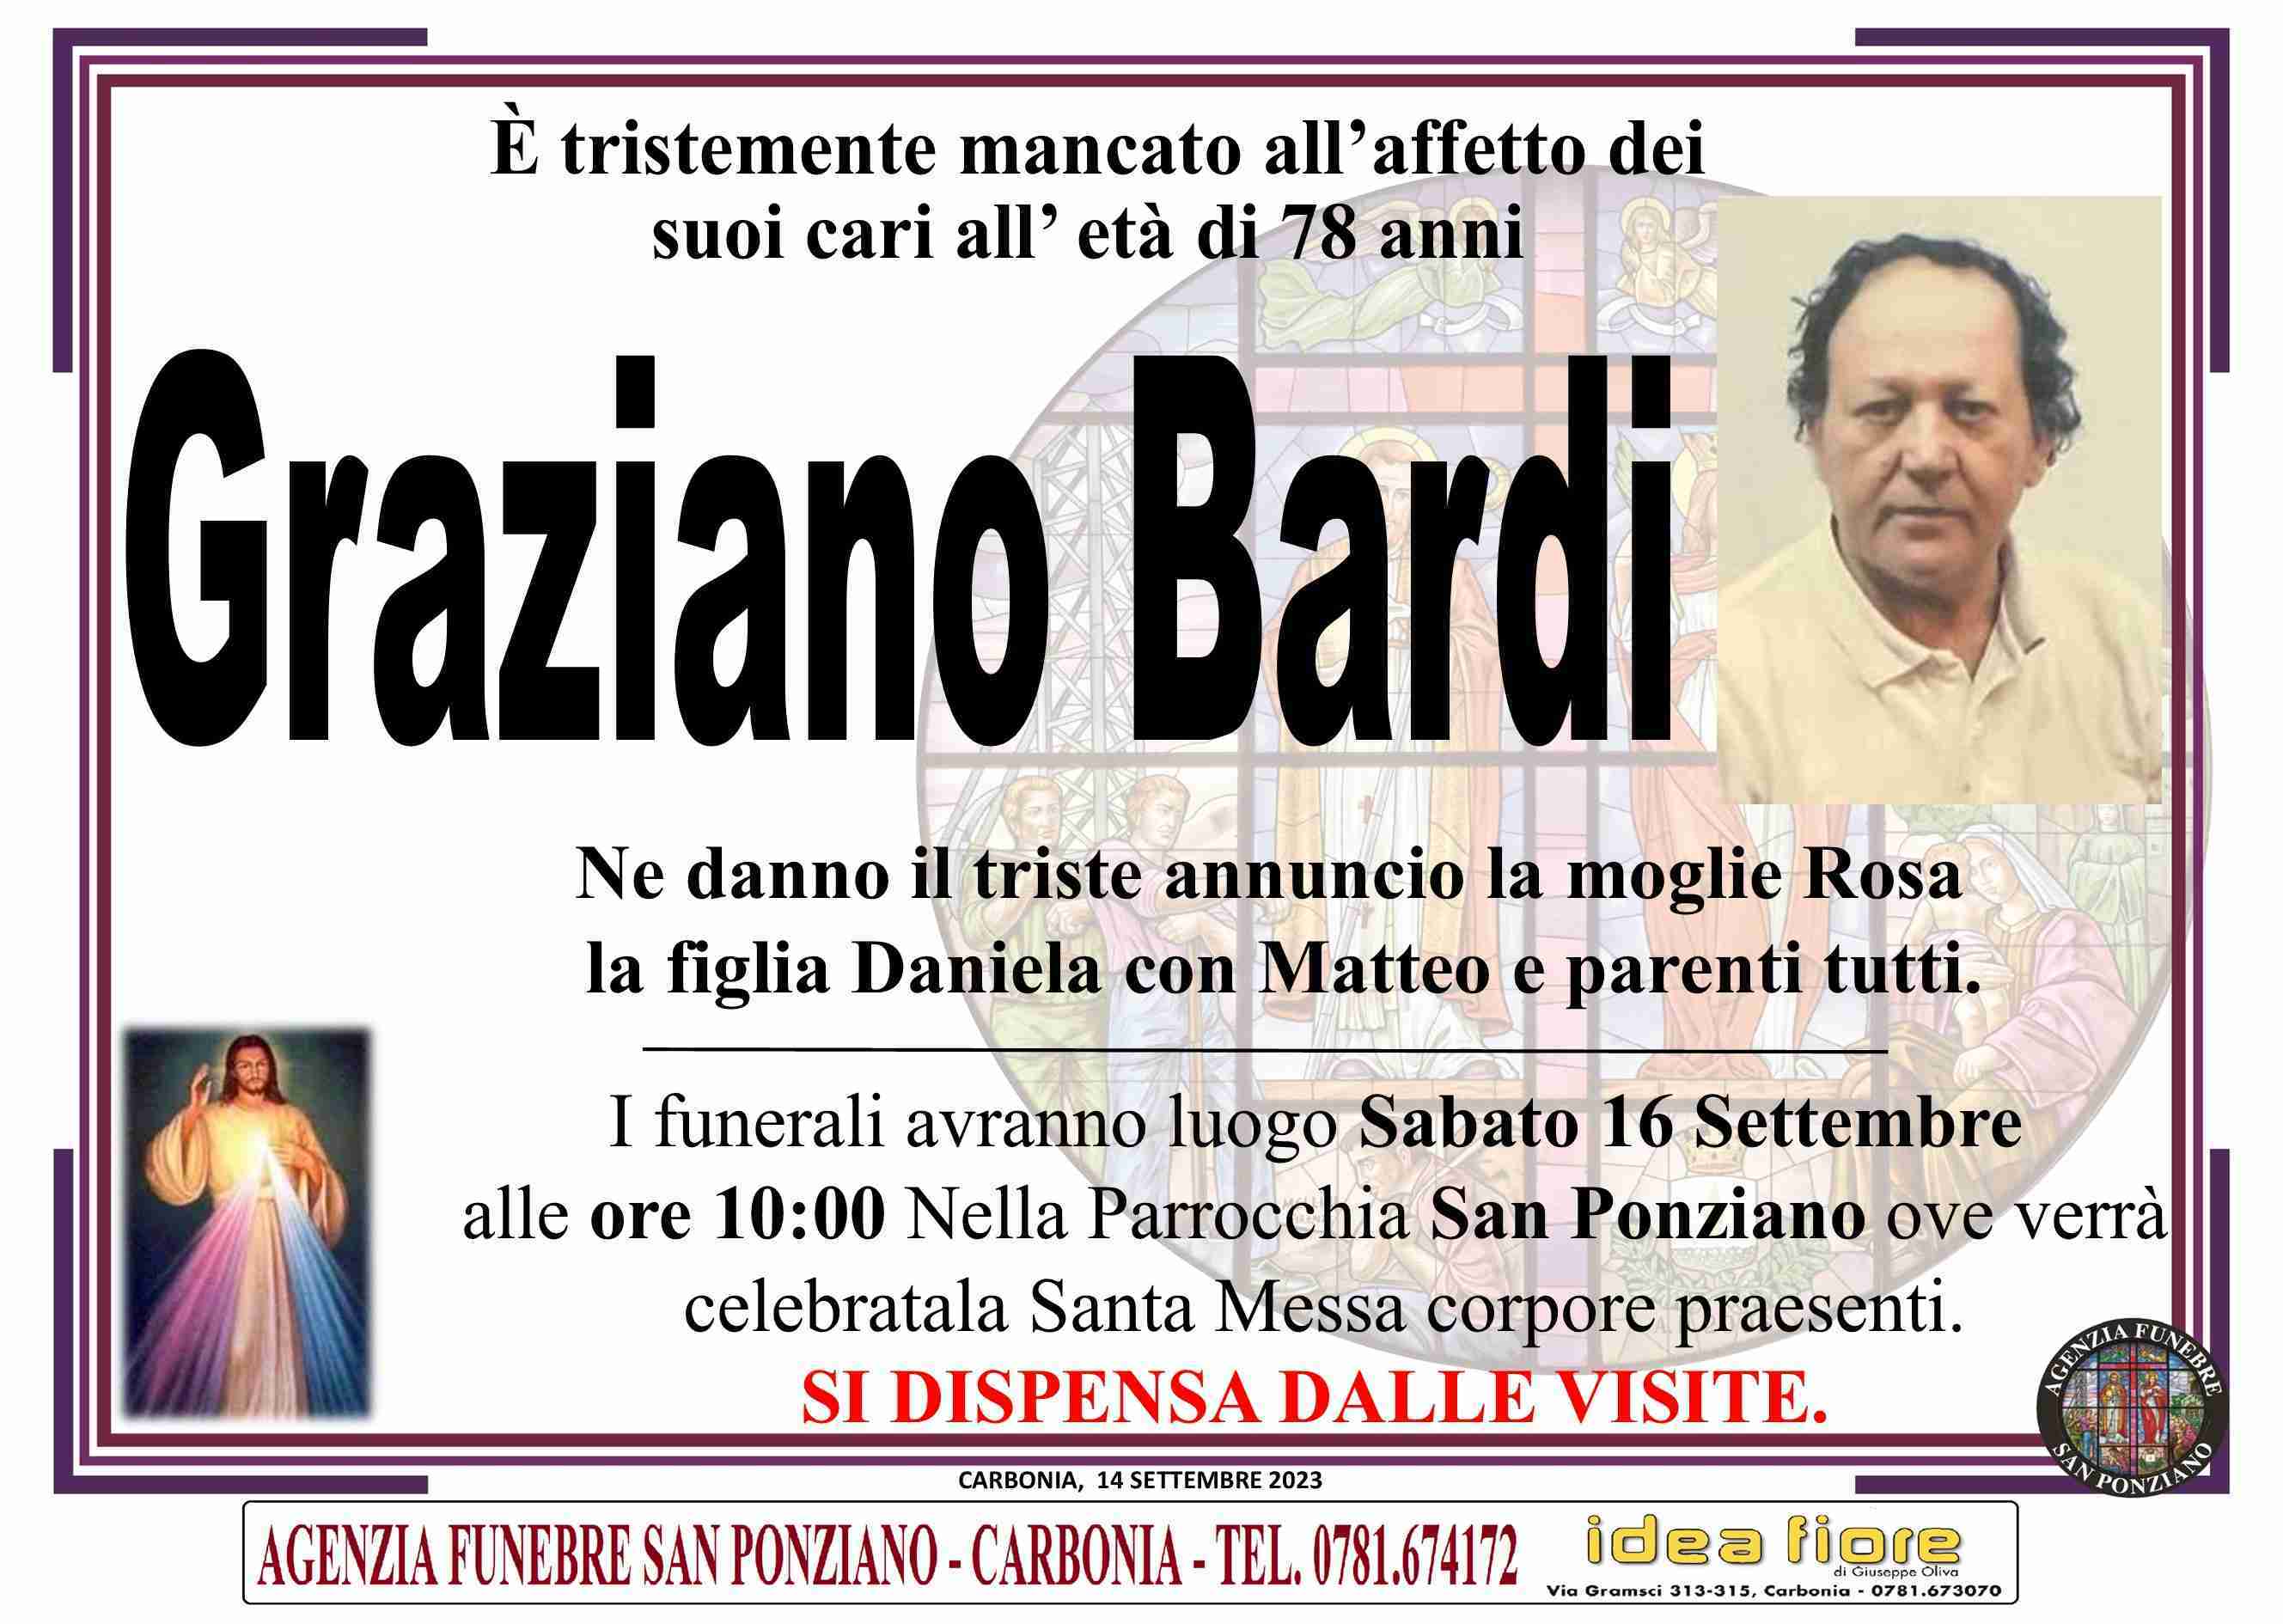 Graziano Bardi